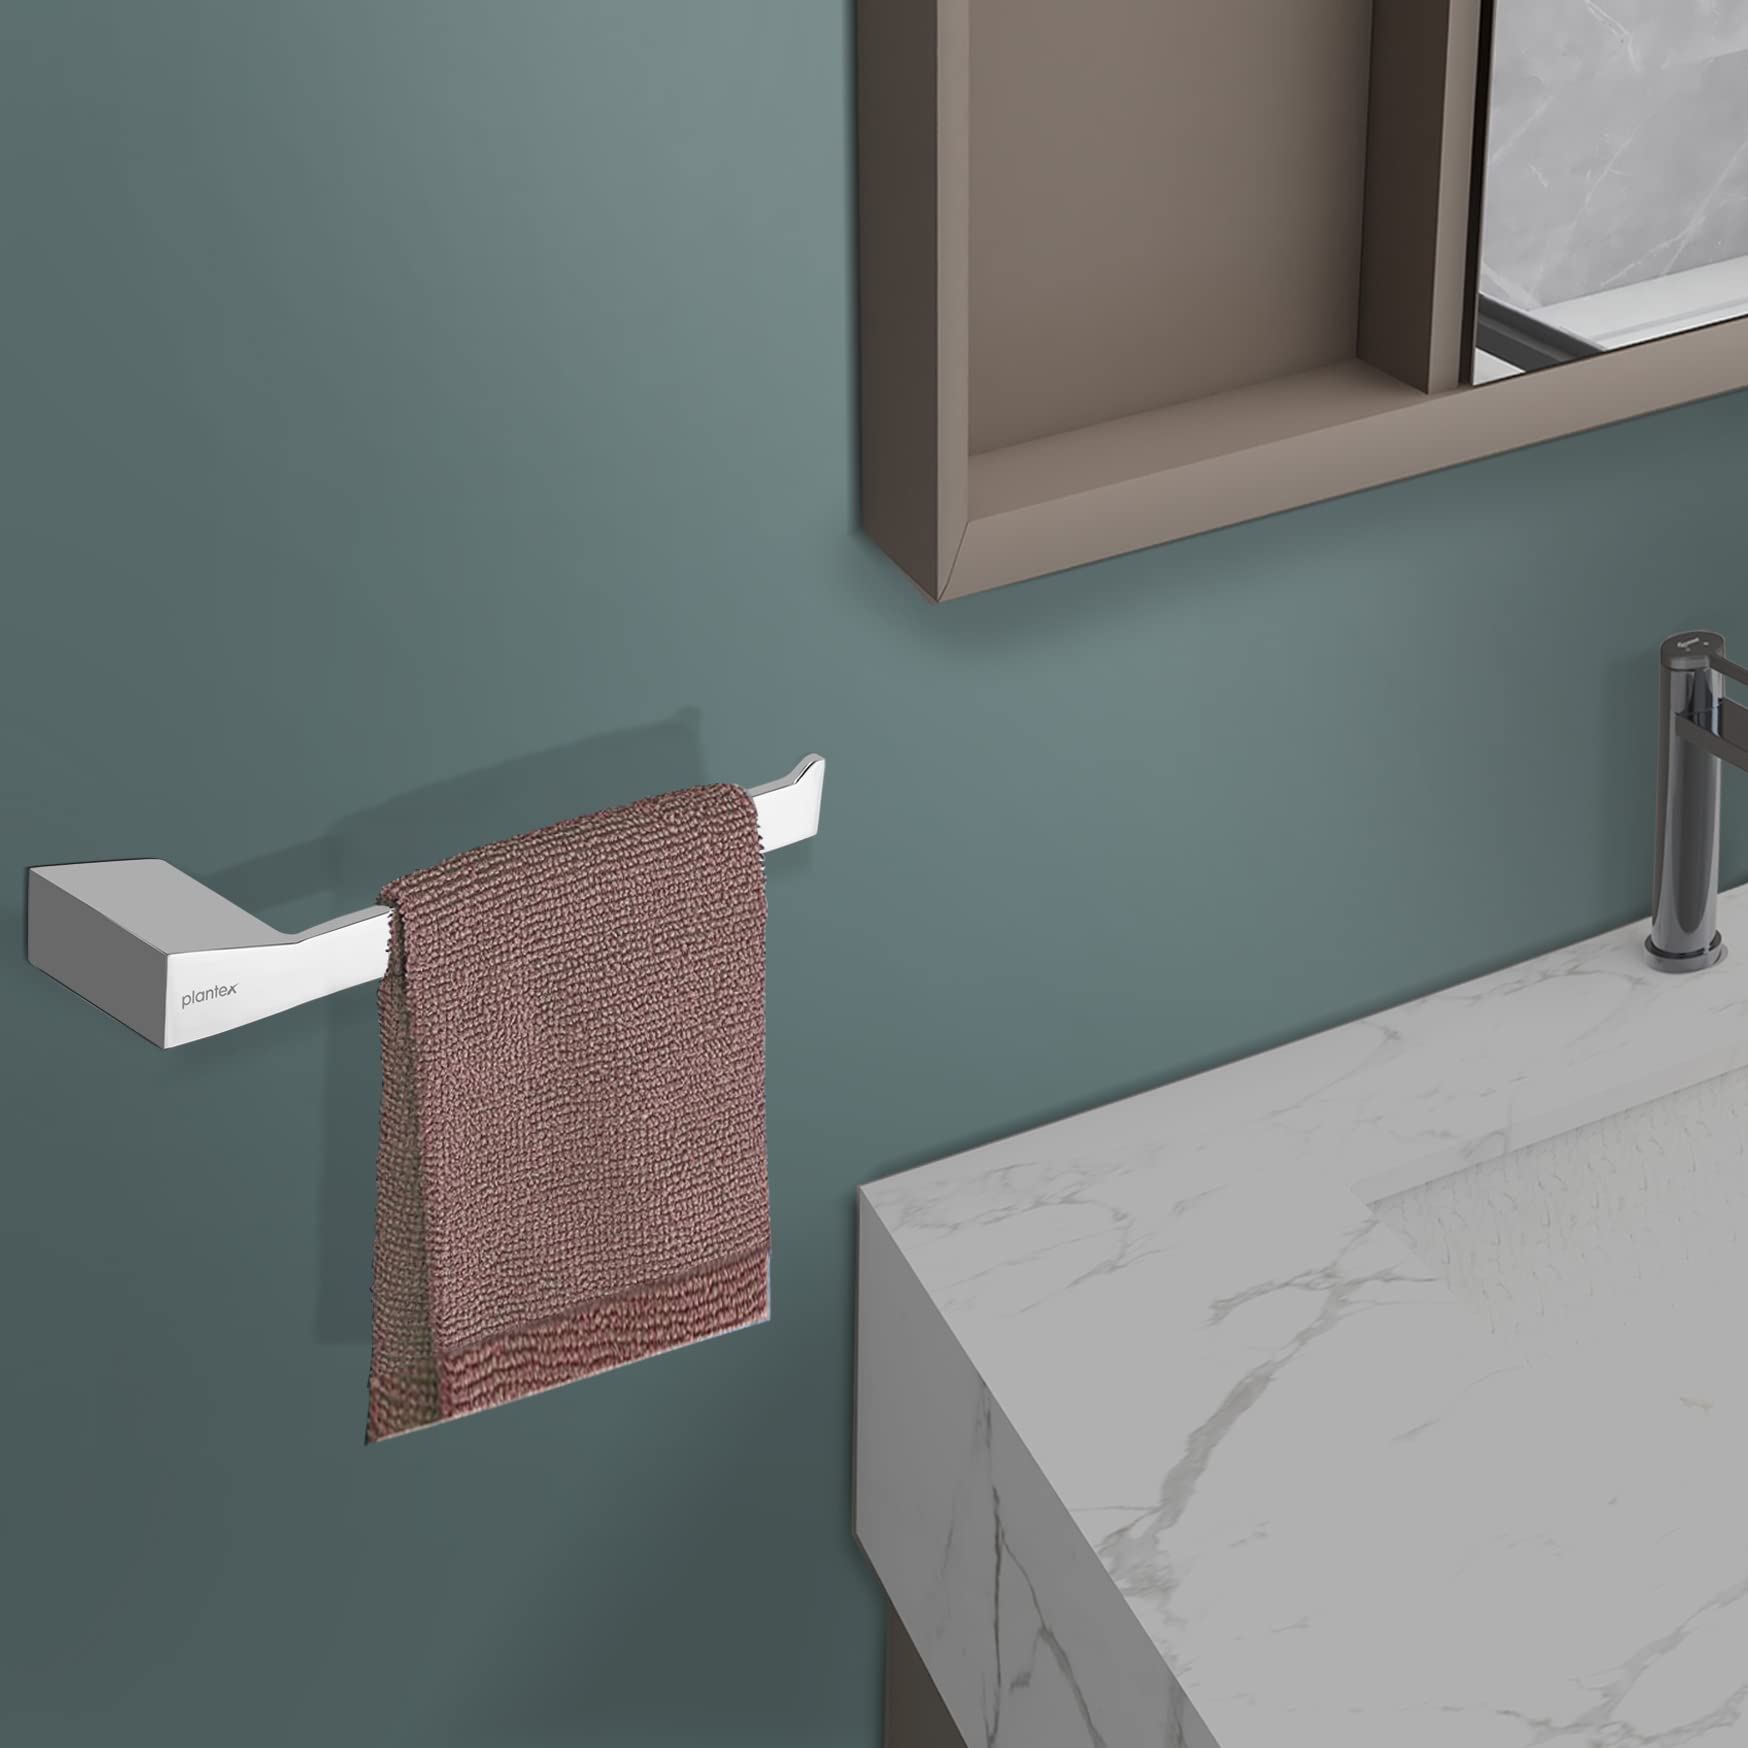 Plantex Super Brass Napkin Holder for wash Basin Hand Towel Holder